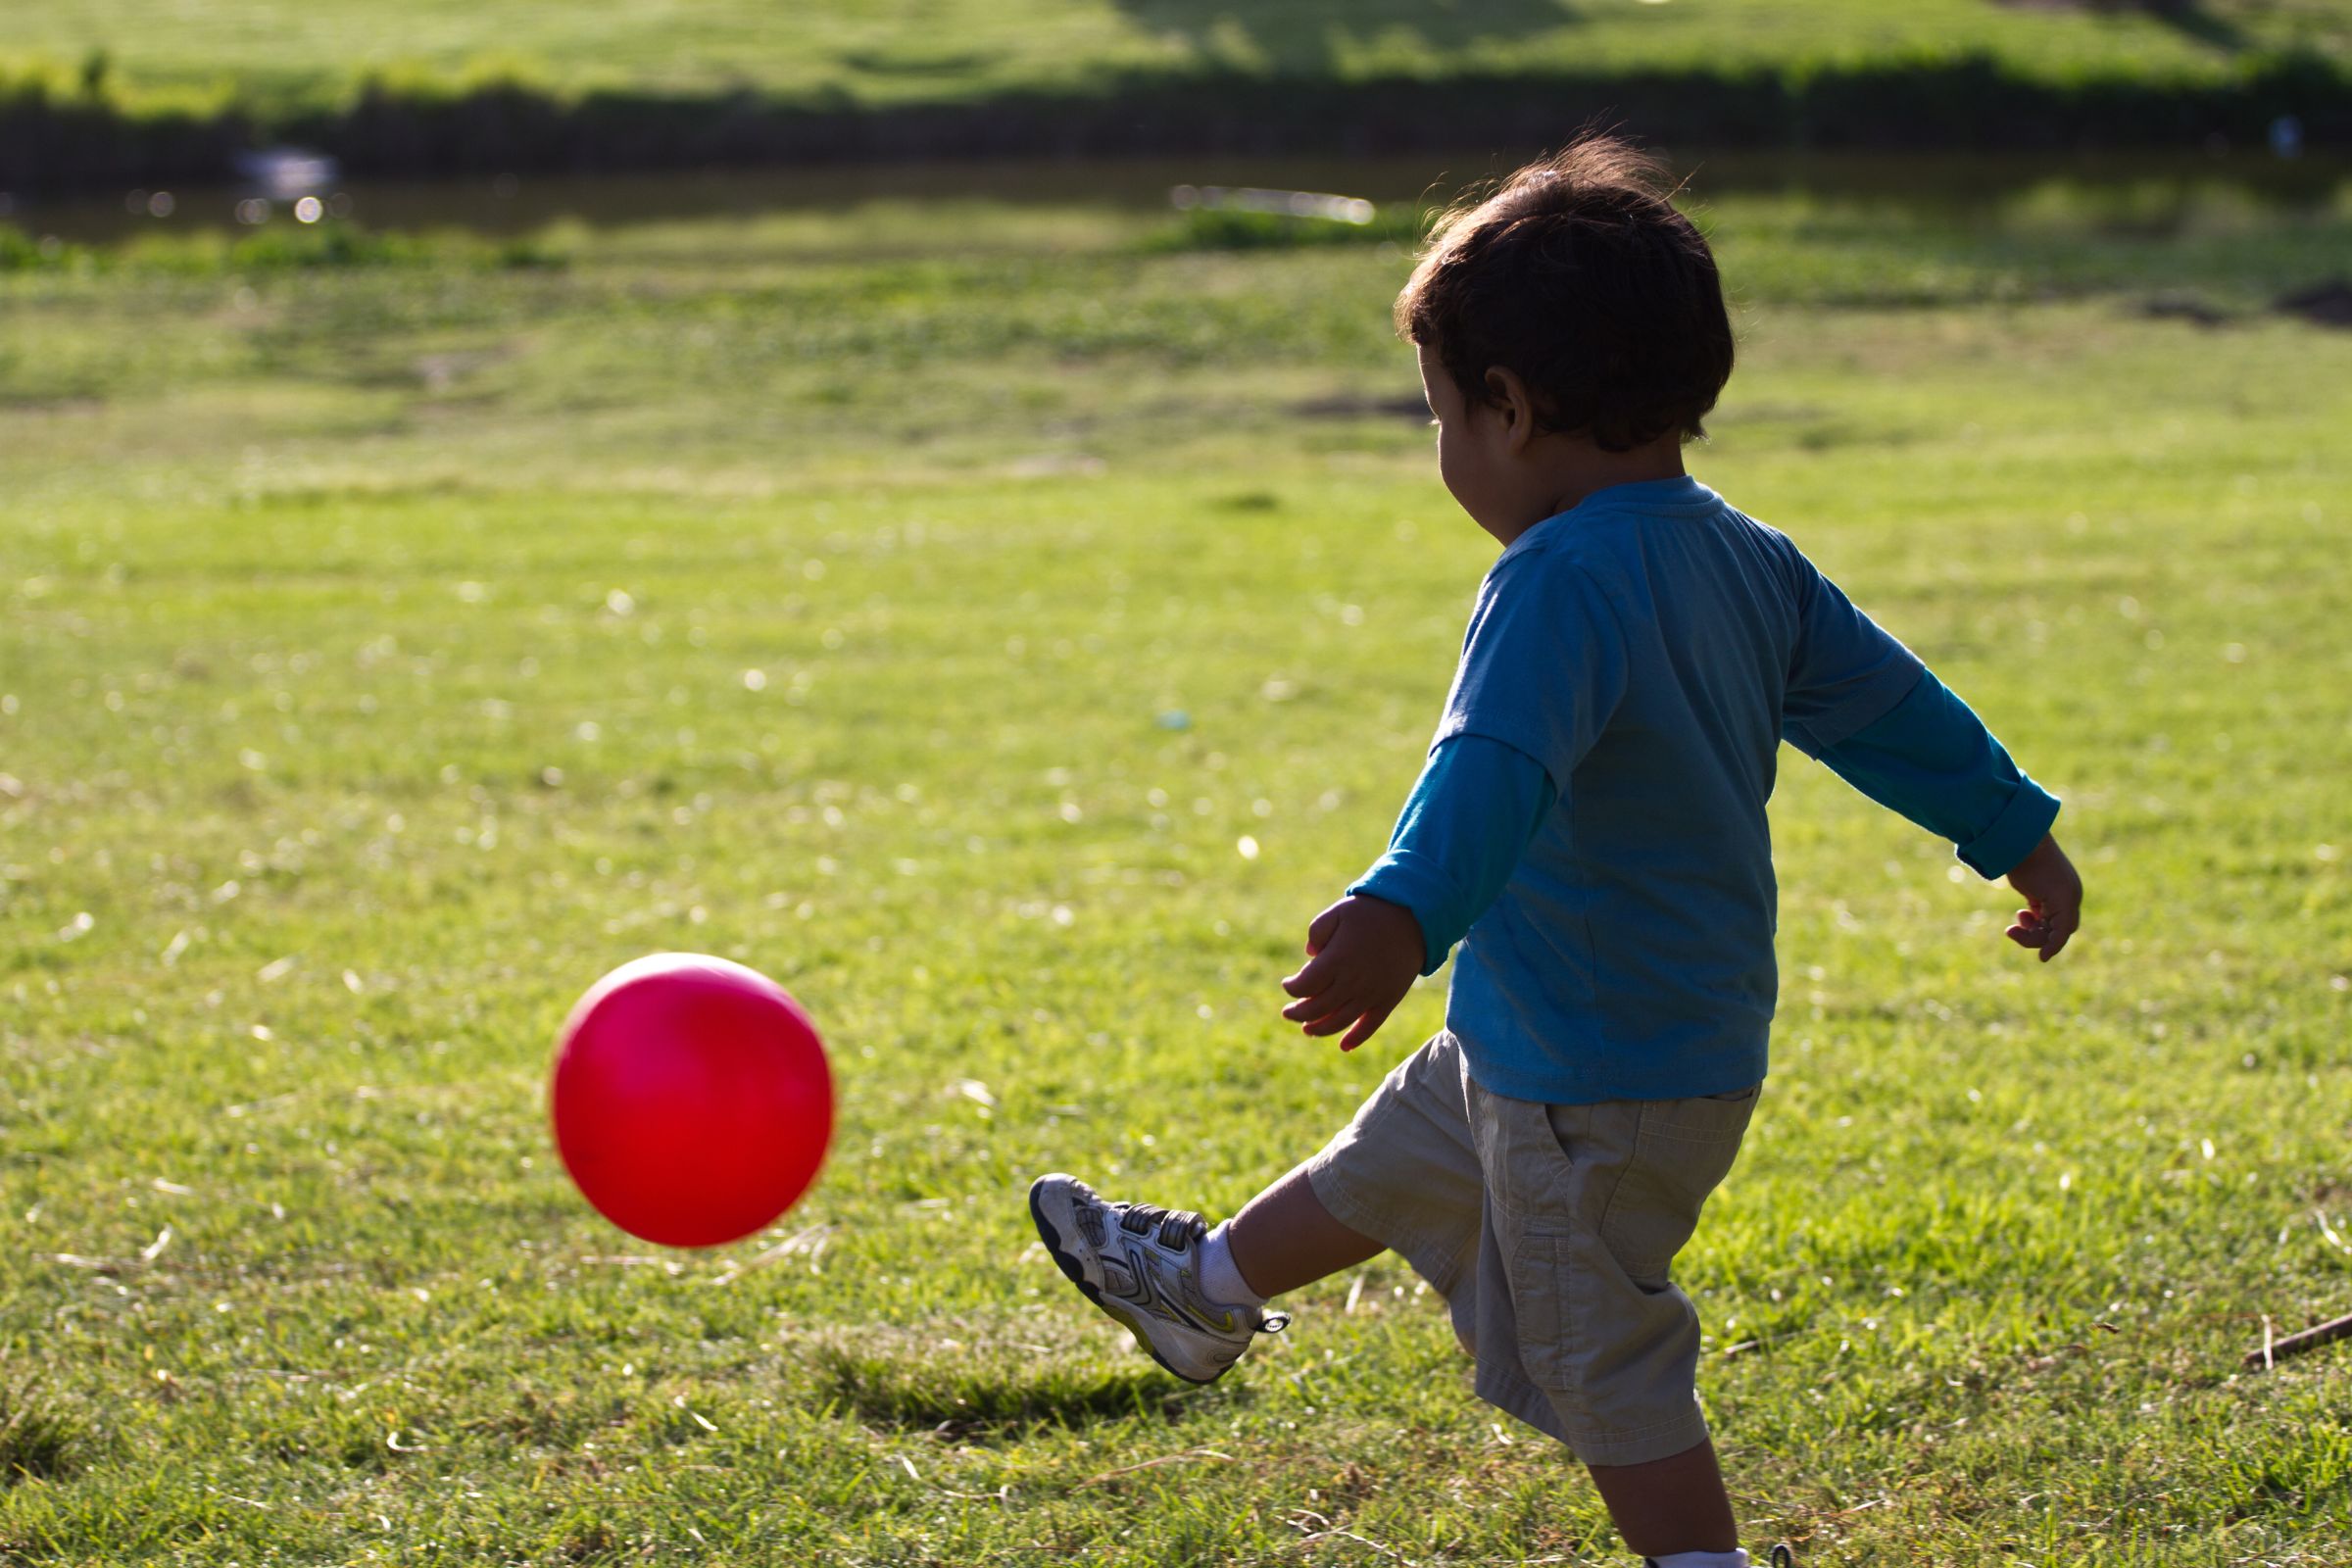 Small child kicking ball